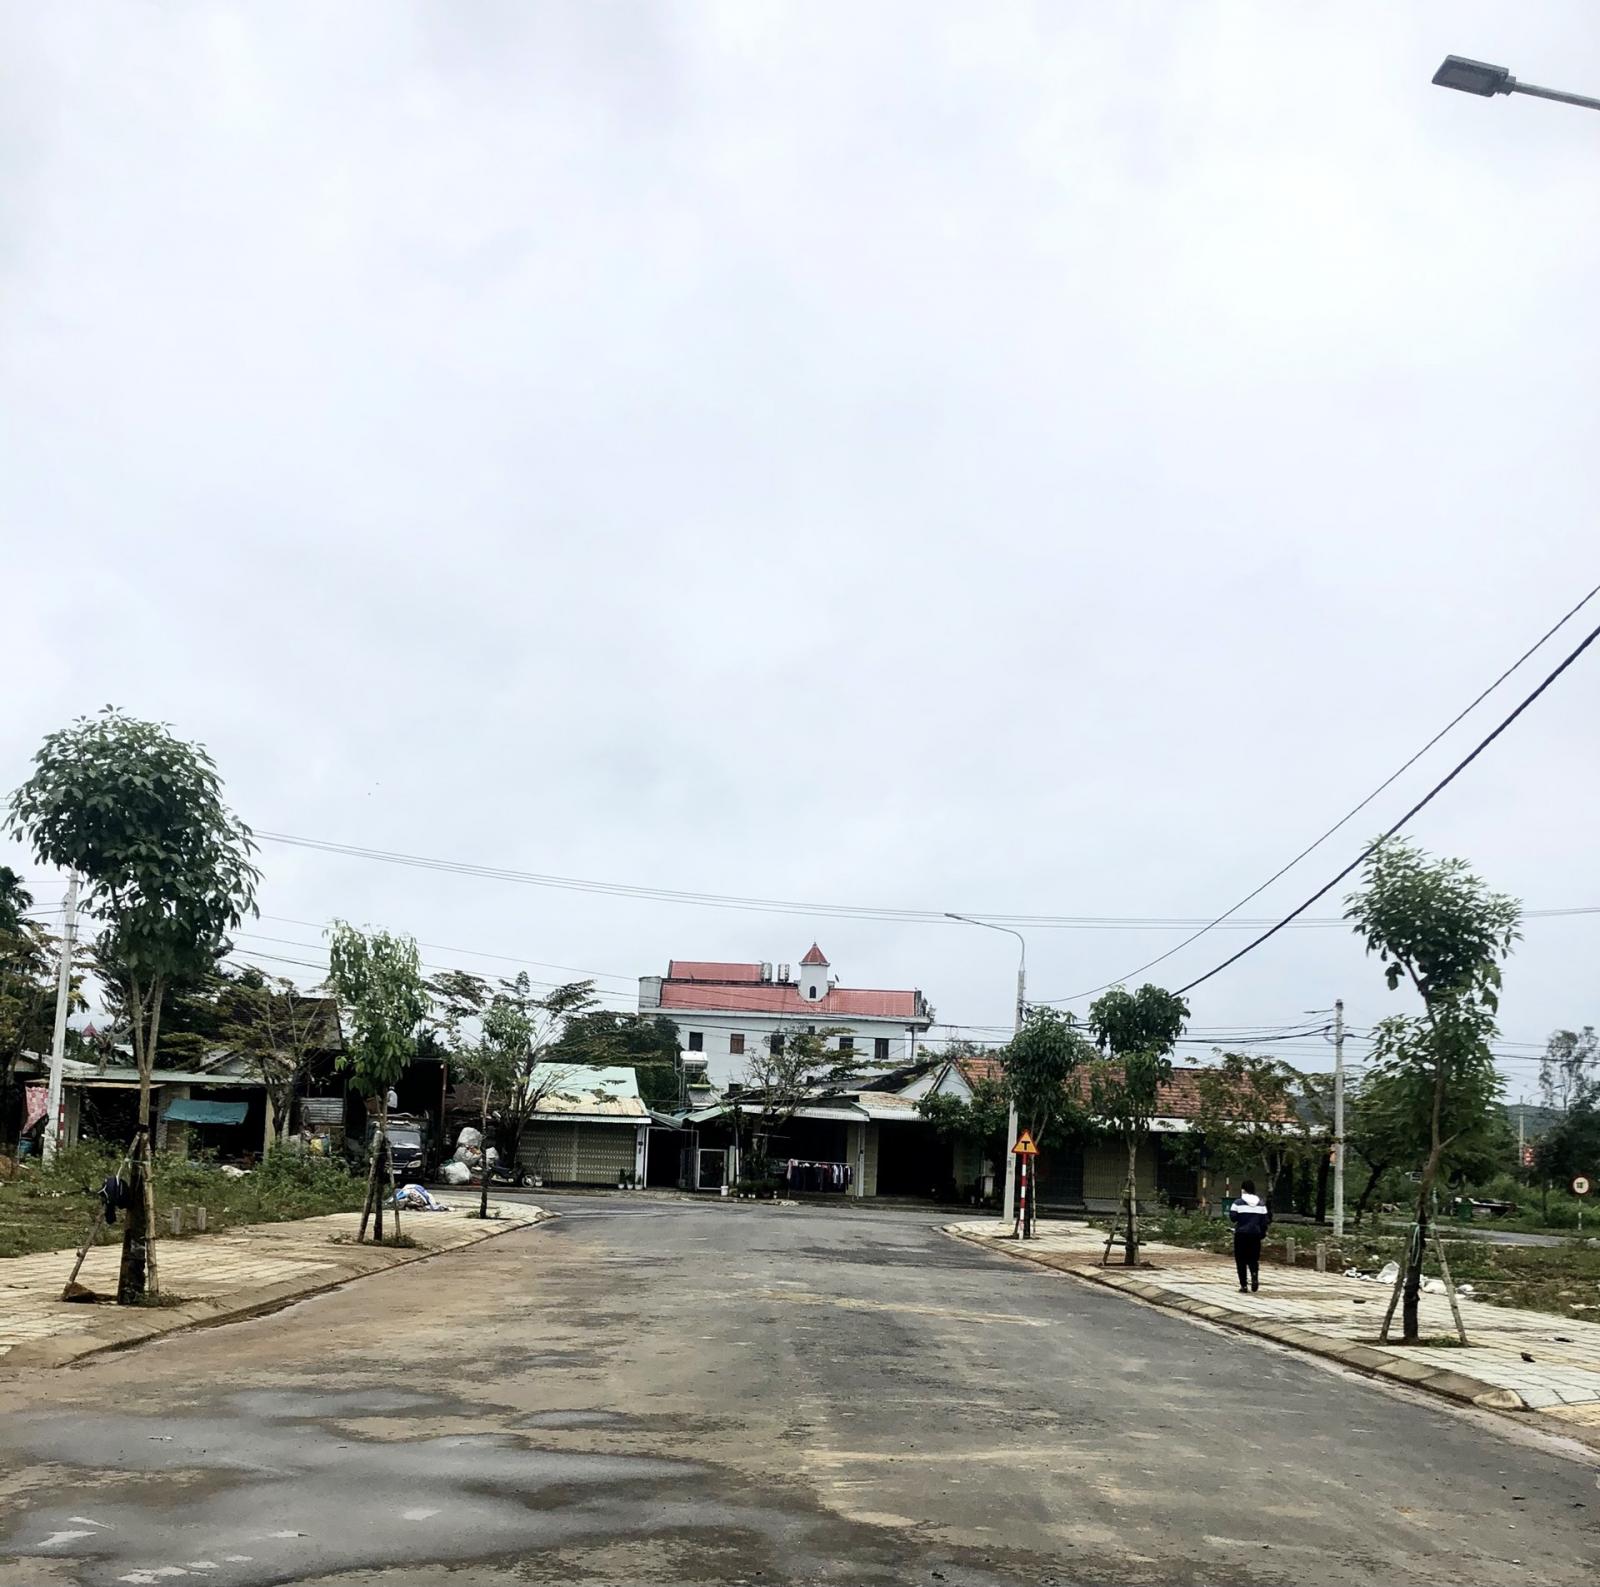  Ra mắt dự án phố chợ ĐẦU TIÊN ở vùng Tây Quảng Nam